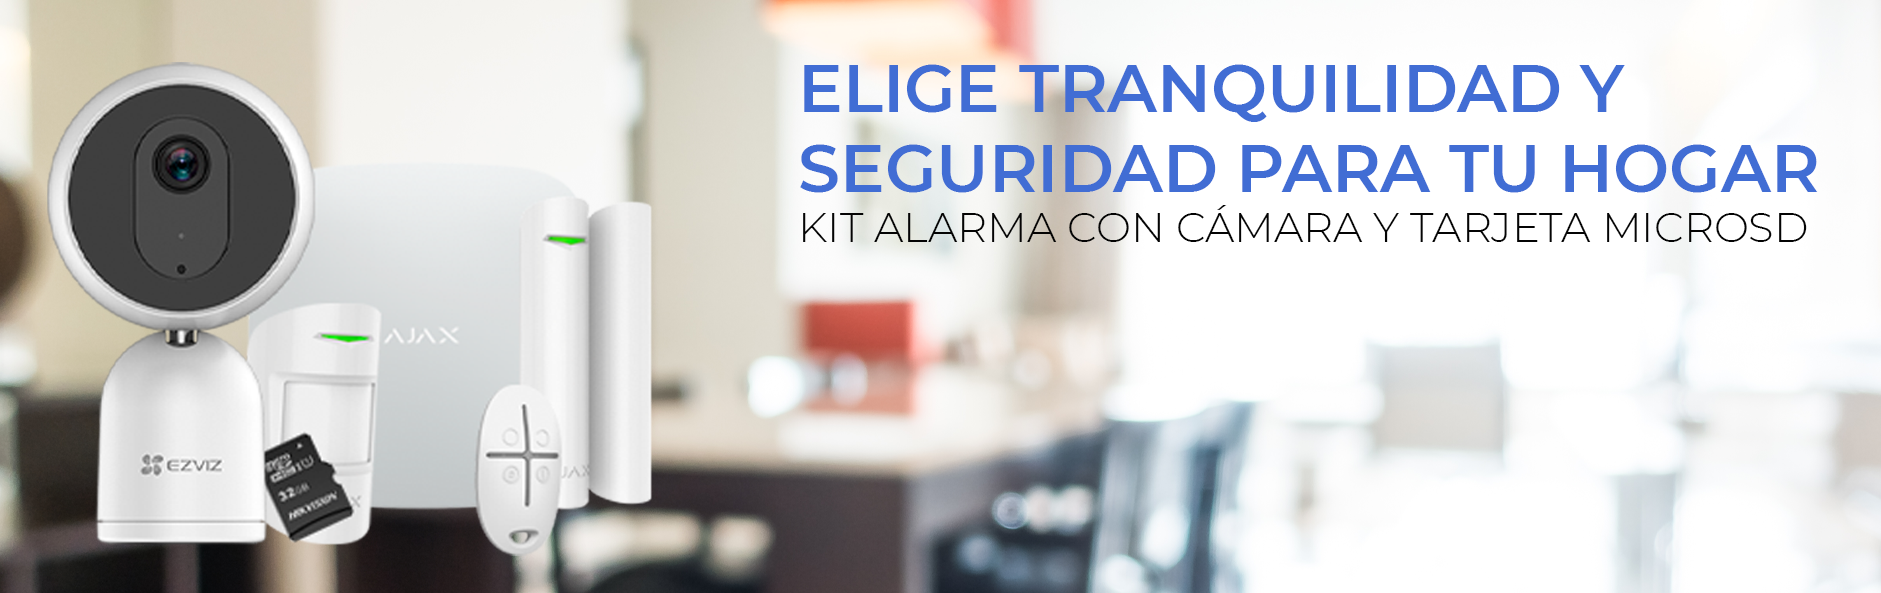 Kit de alarma AJAX protección y seguridad para el hogar I AJ-HUB-SFR-W